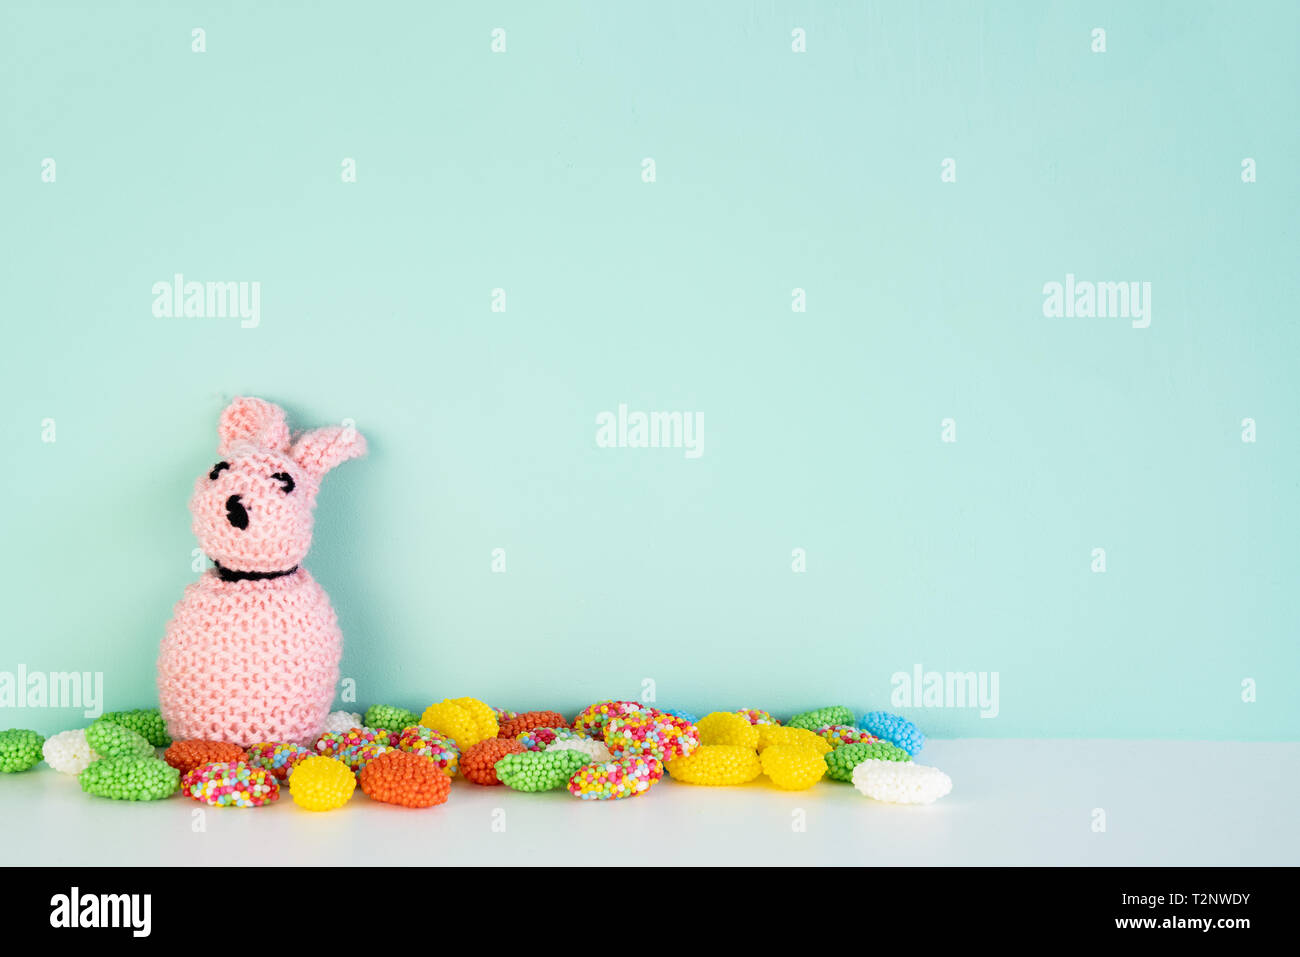 Gefüllte bunny Toy mit farbigen Süßigkeiten vor einem farbigen Hintergrund, mit Platz daneben Stockfoto